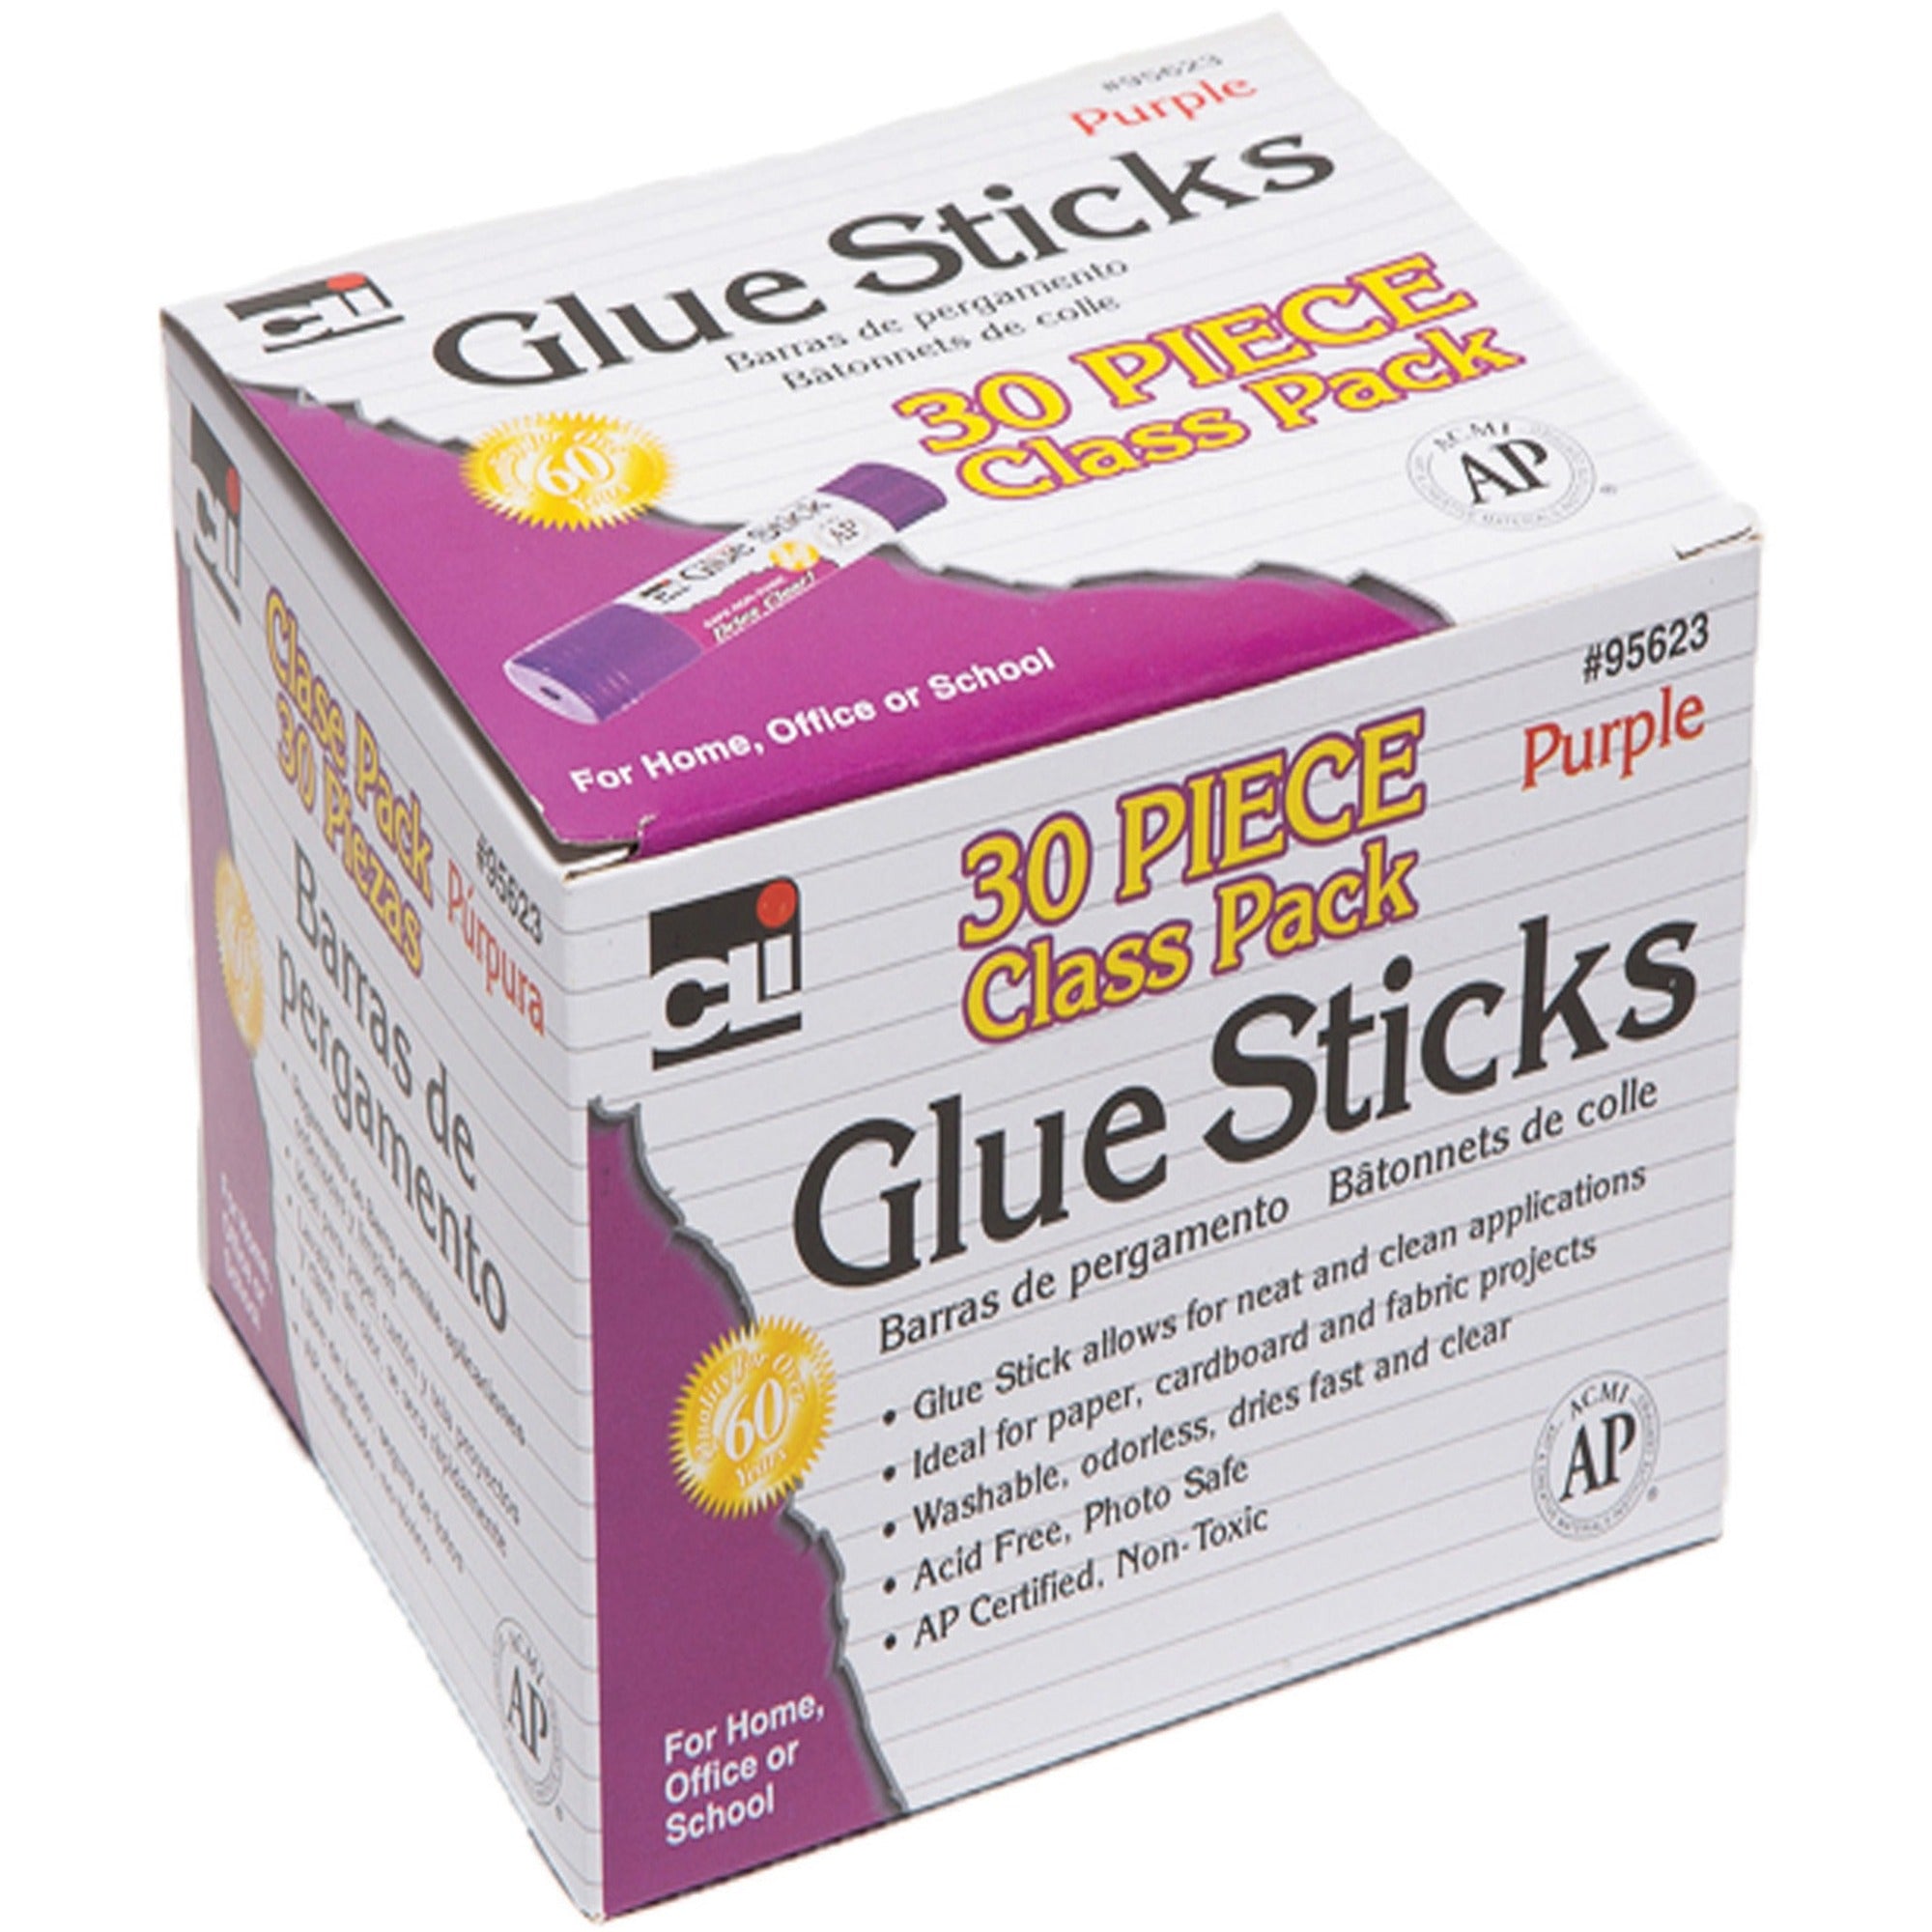 cli-glue-sticks-class-pack-028-oz-30-box-purple_leo95623 - 1